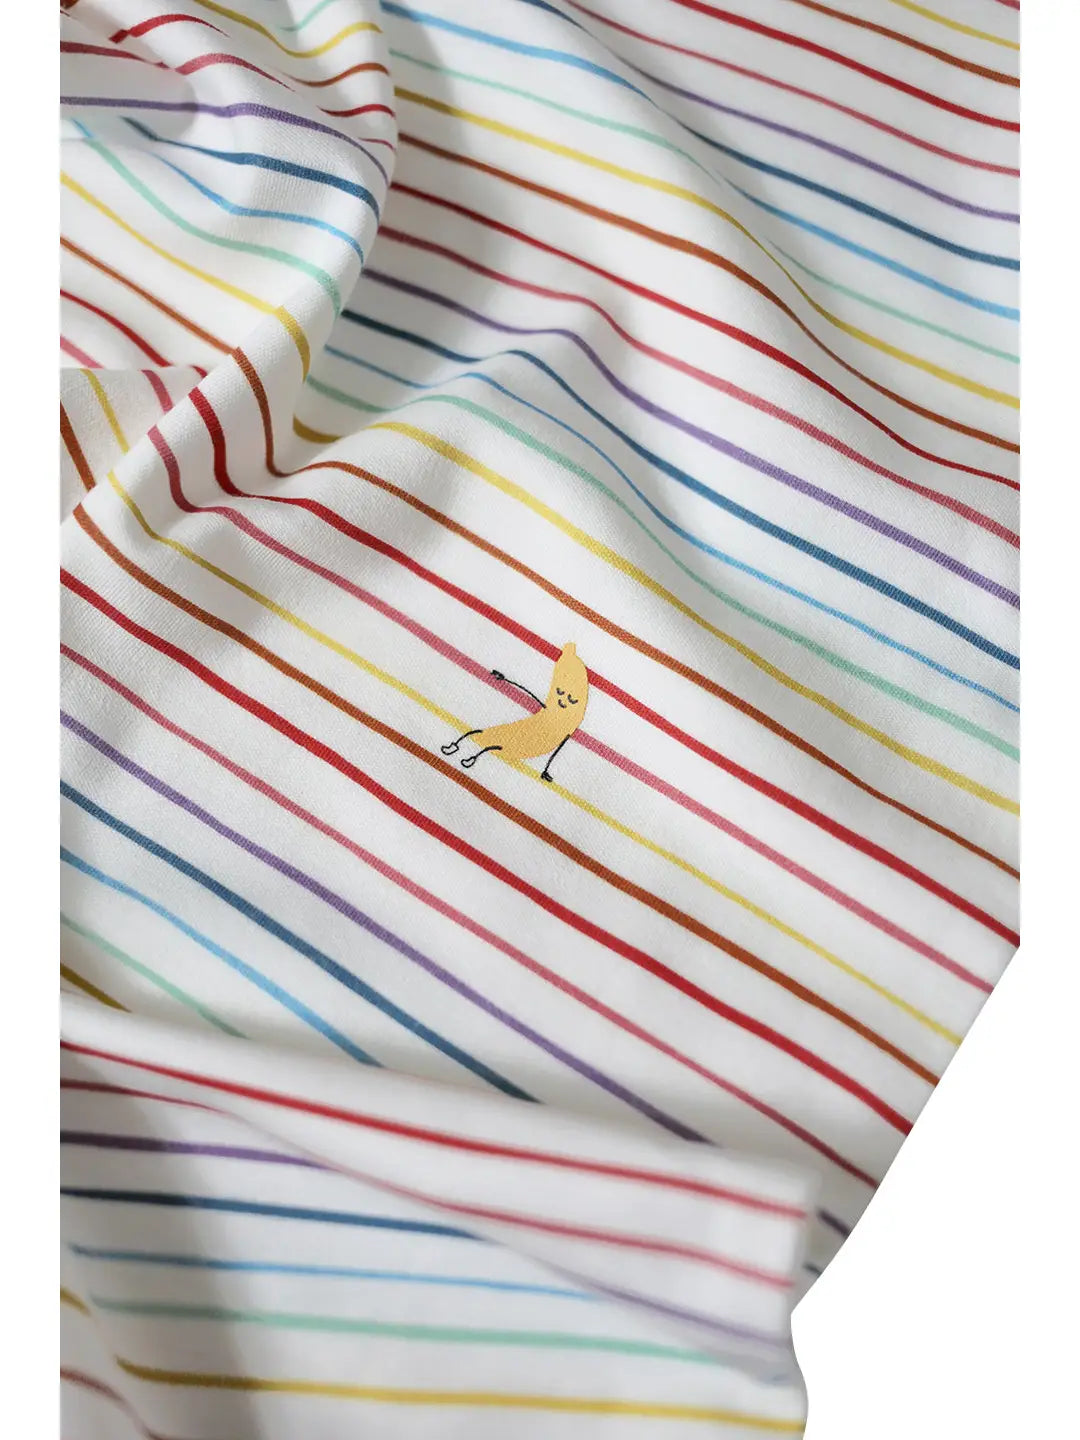 Dodo Banana Pajamas, Rainbow Stripe